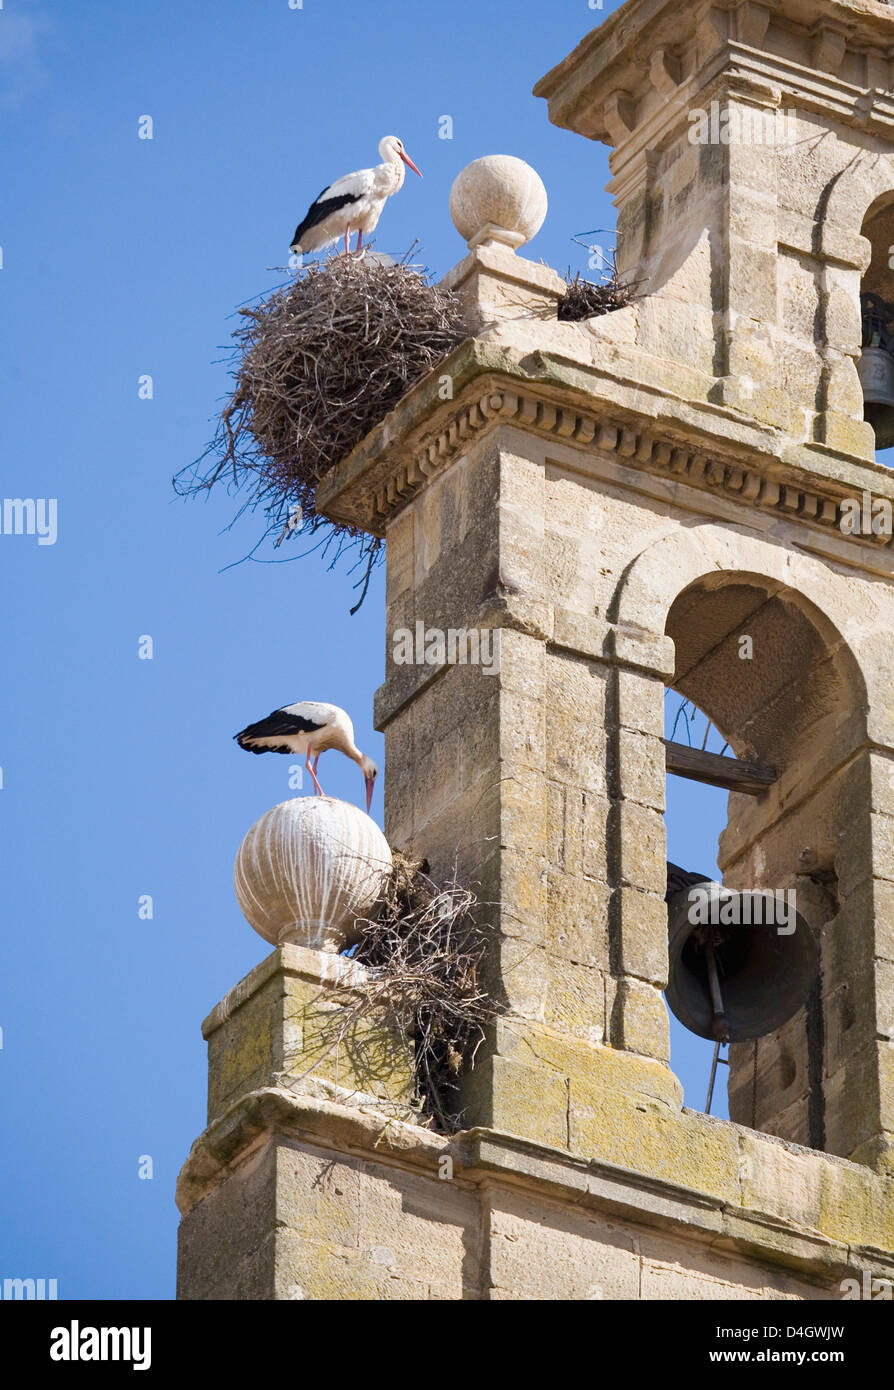 Zwei europäische Weißstörche und ihre Nester auf einem Kloster Glockenturm, vor blauem Himmel, Santo Domingo, La Rioja, Spanien Stockfoto